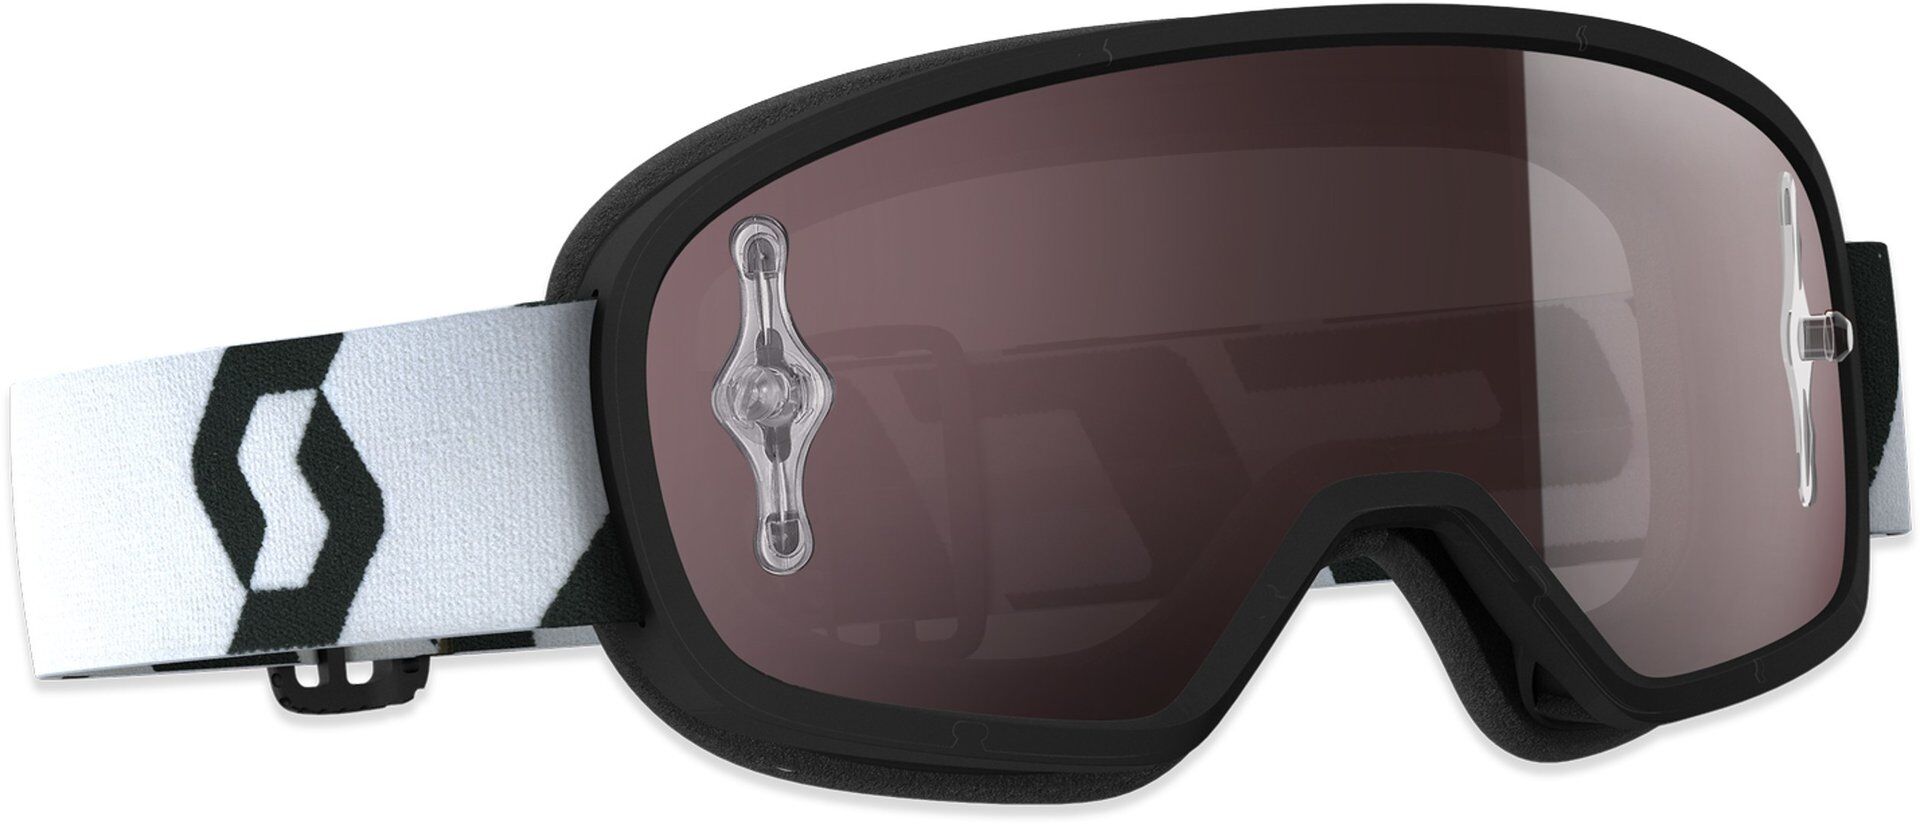 Scott Buzz Pro Los niños gafas de Motocross - Negro Blanco (un tamaño)